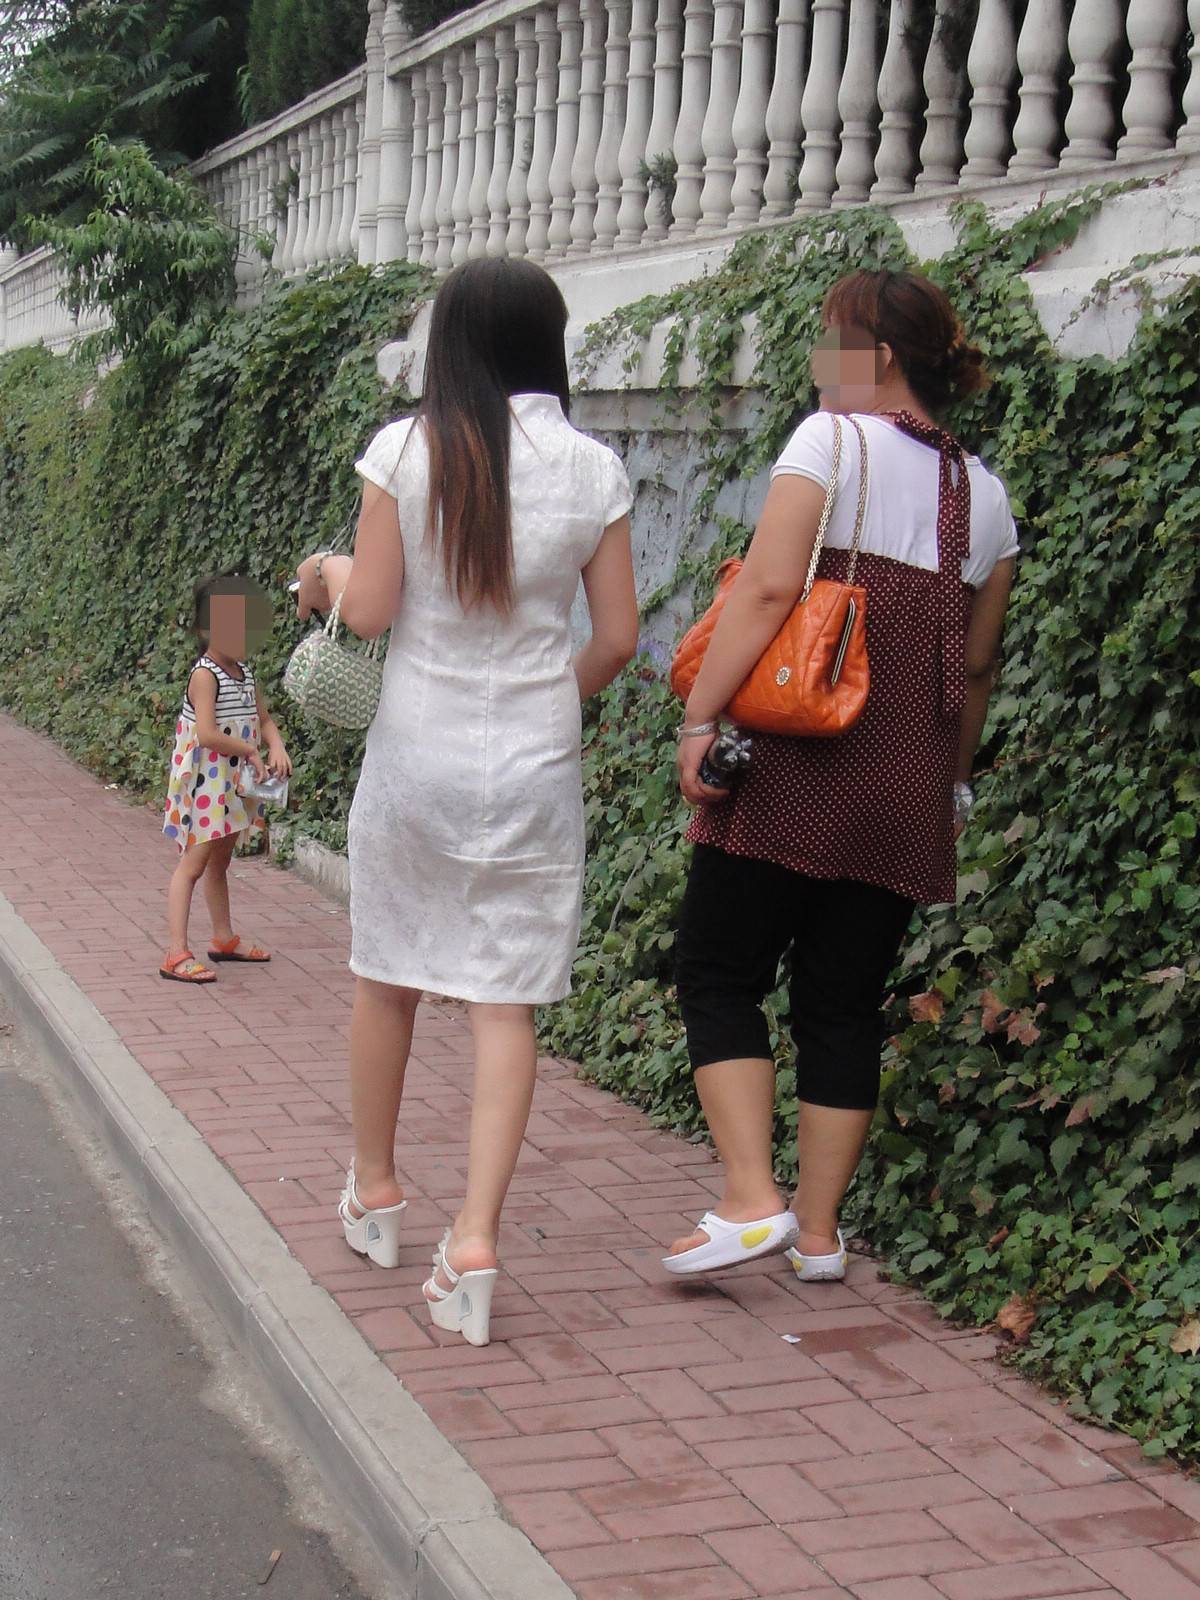 [户外街拍] 2013.09.08 白裙白超高凉托妇人